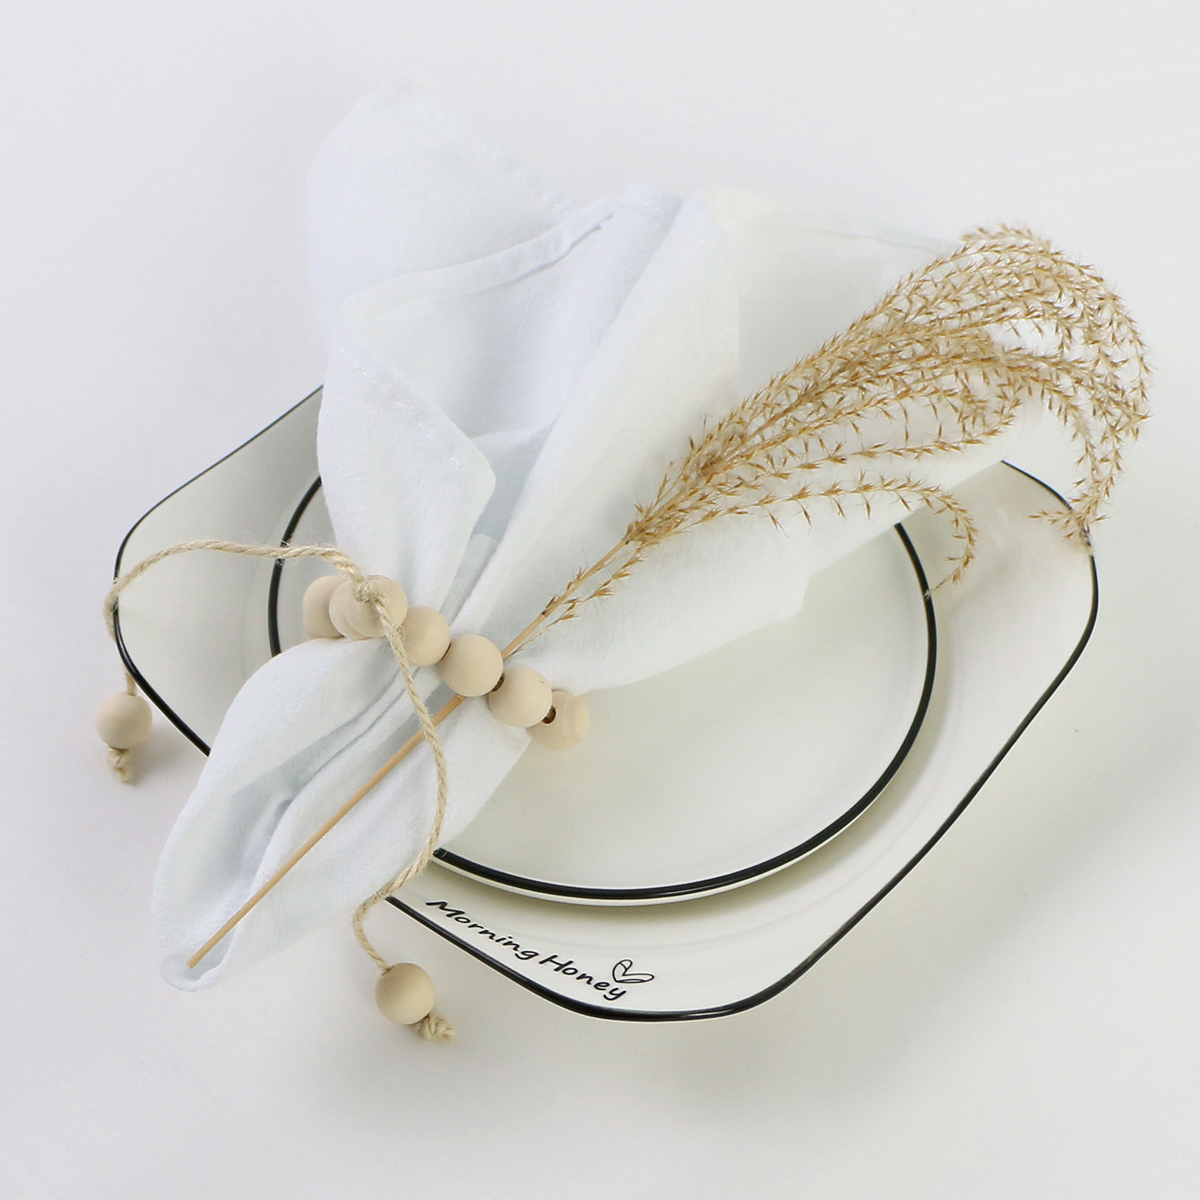 Guardanapo de mesa de mesa de mesa guardanapos guardanapos de tecido de algodão servette home toup toubel